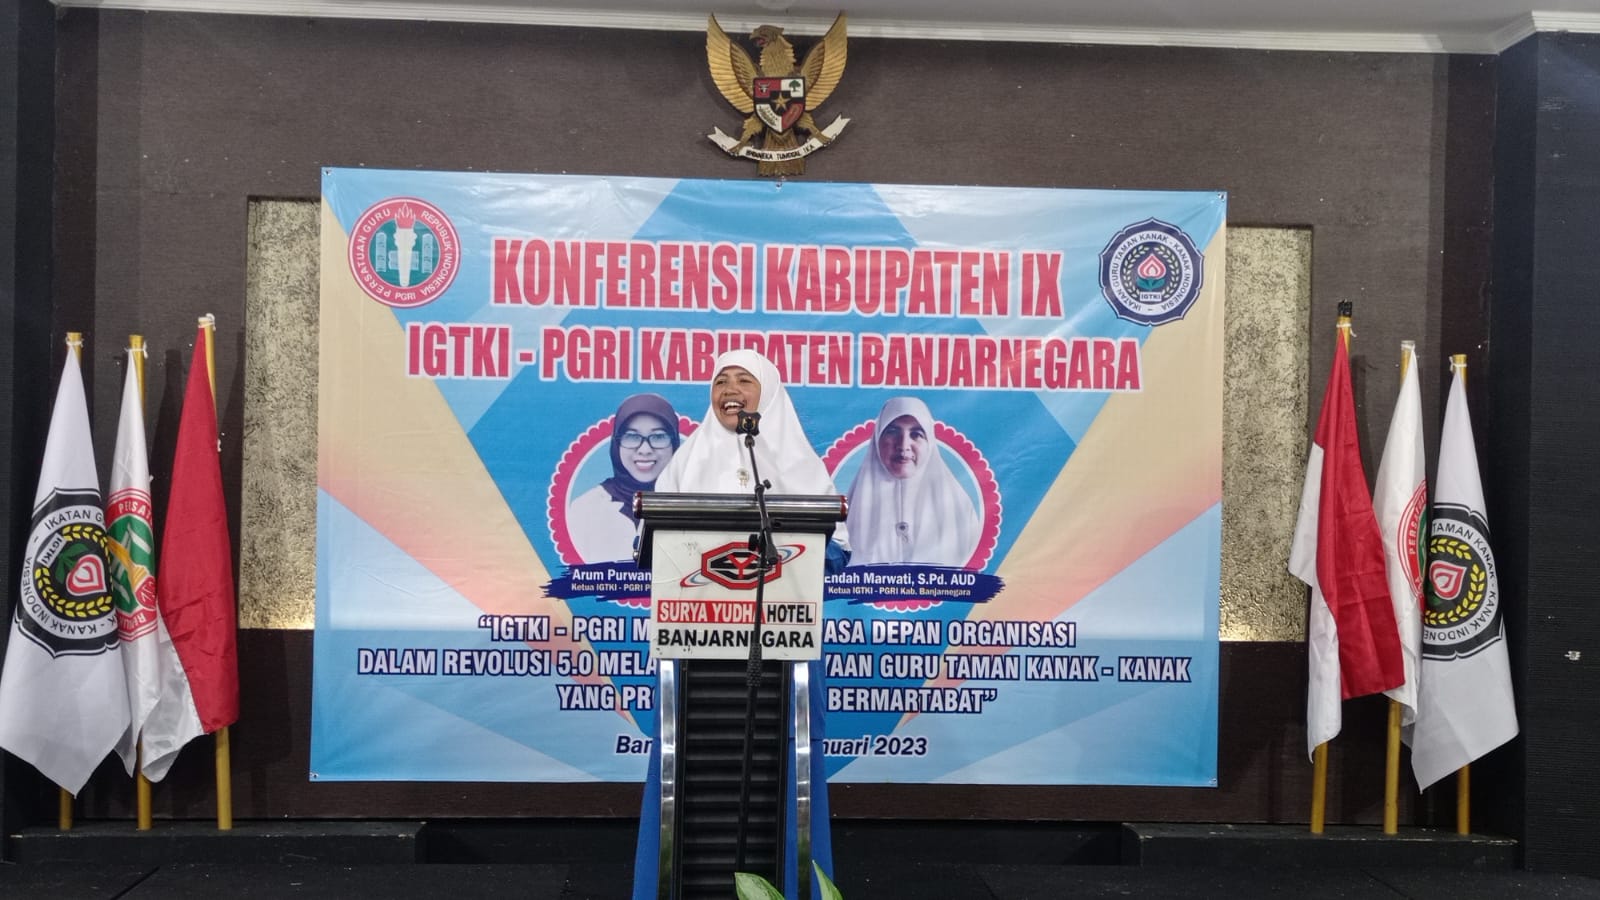 Endah Mawarti Kembali Pimpin IGTKI-PGRI Kabupaten Banjarnegara